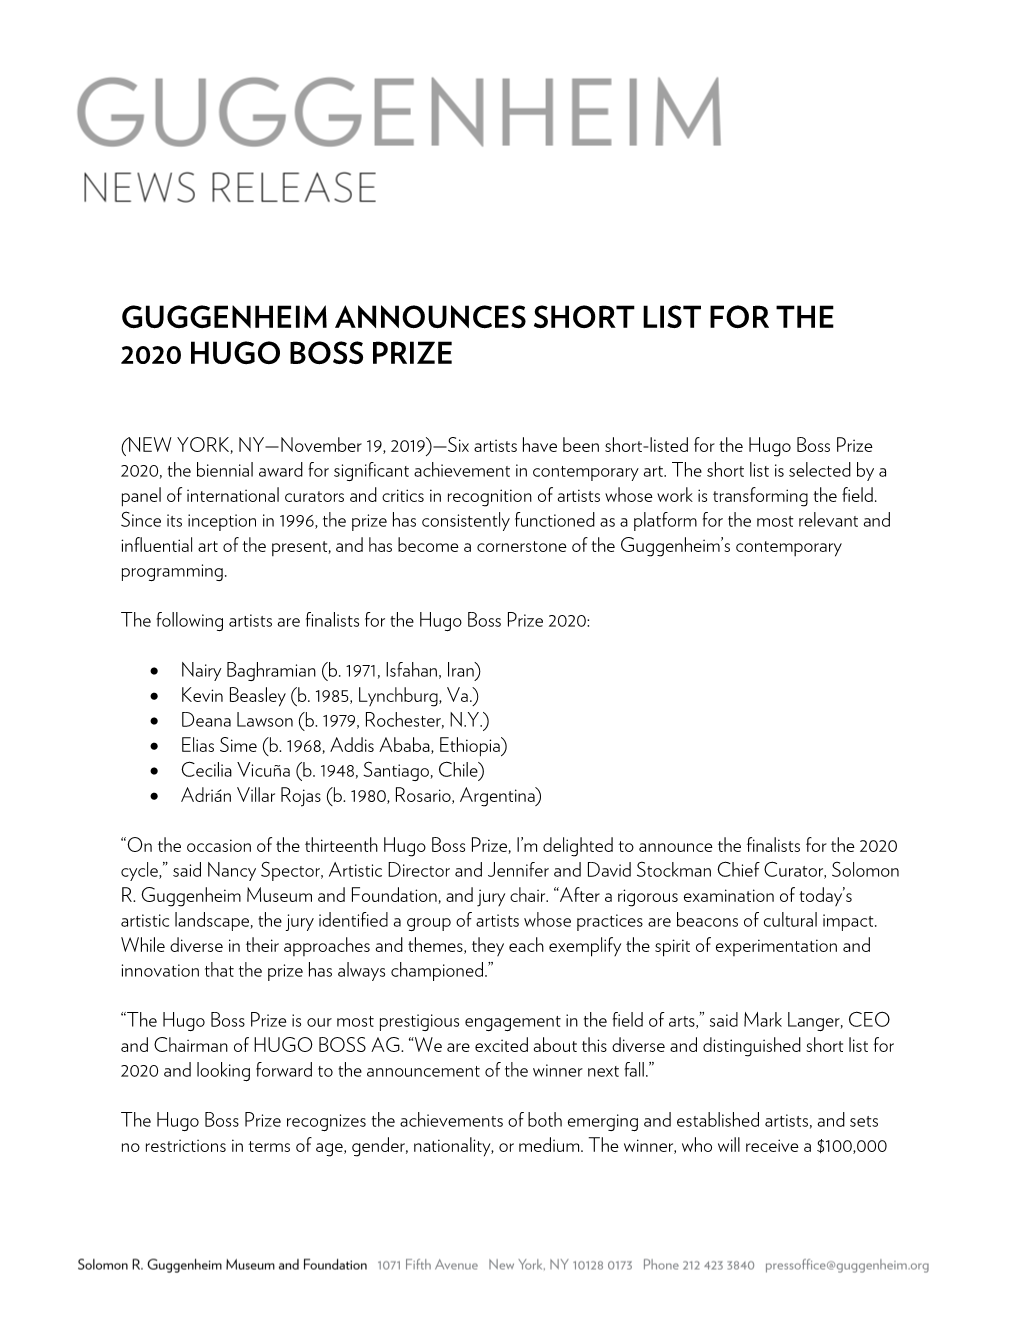 Guggenheim Announces Short List for the 2020 Hugo Boss Prize